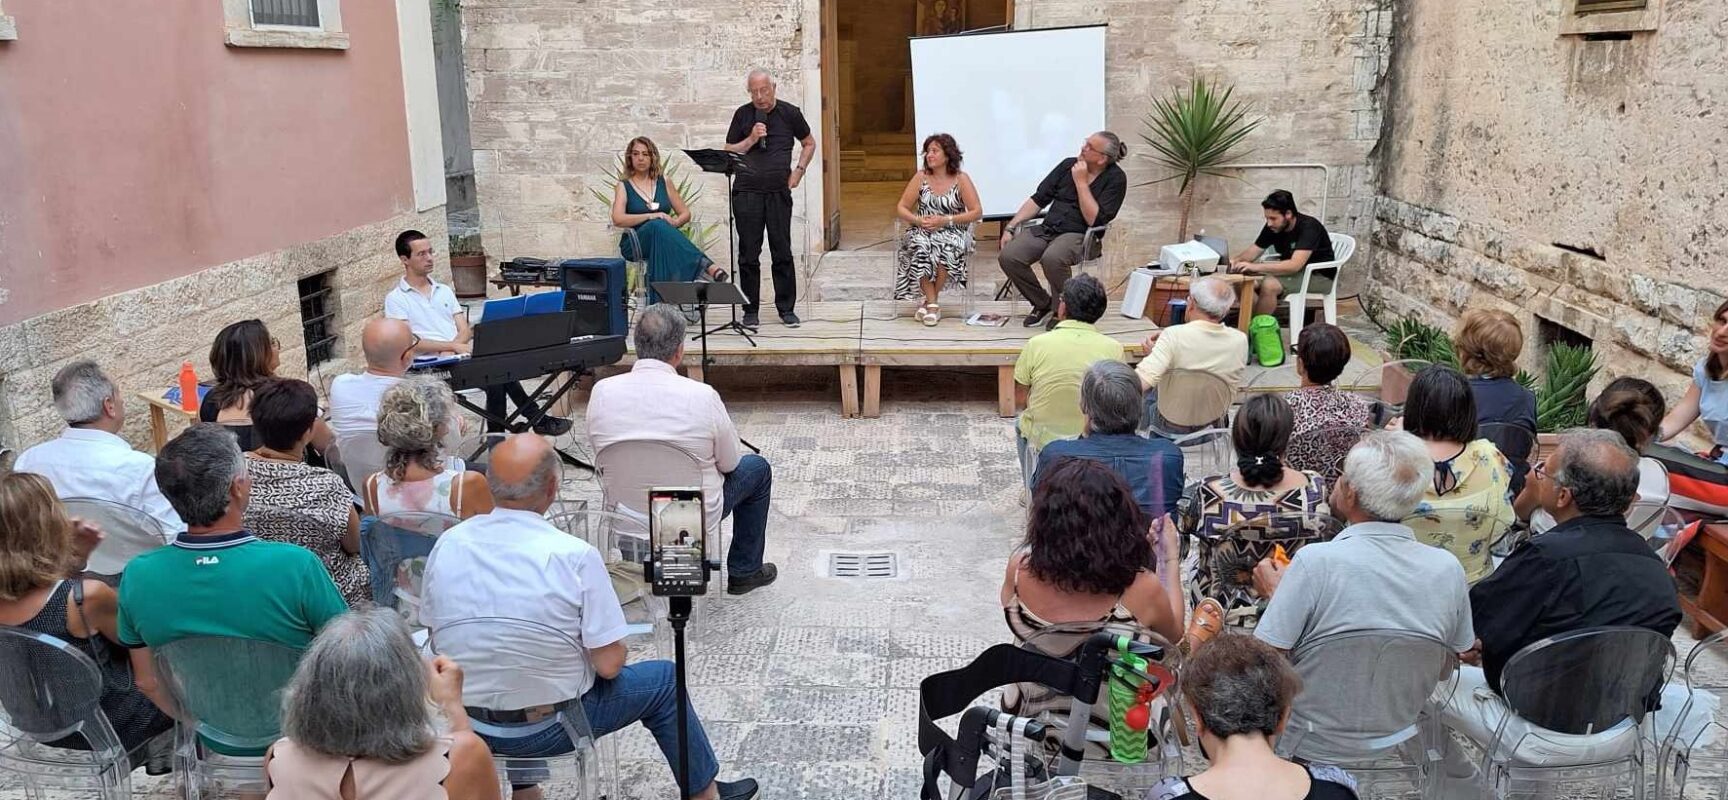 Il poeta siciliano Beppe Costa ha presentato a Bisceglie le sue opere letterarie